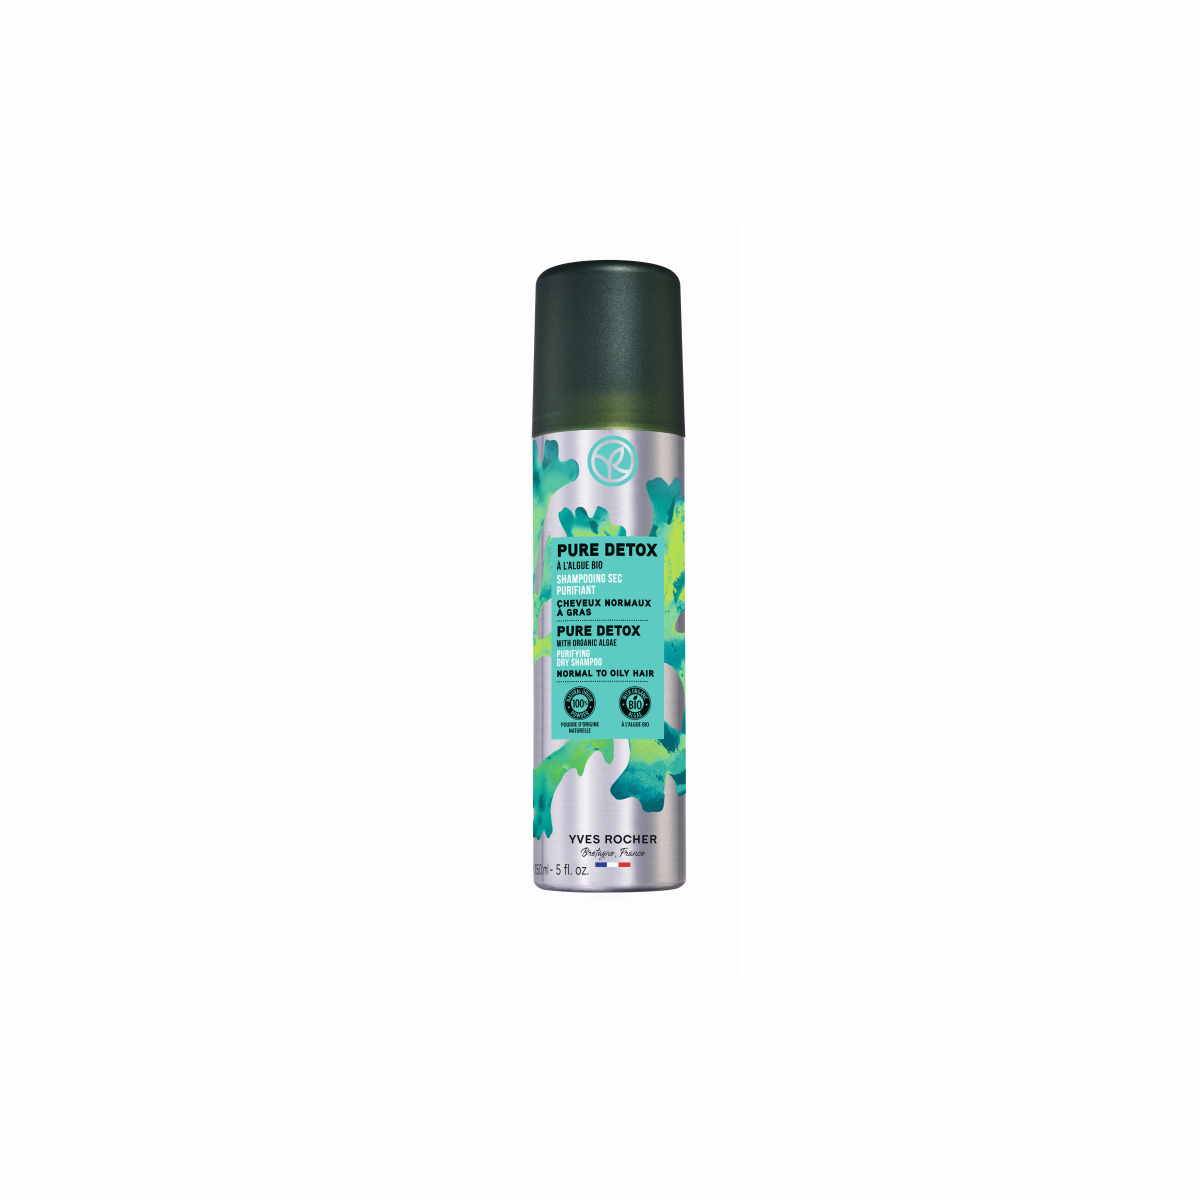 Suchy szampon oczyszczający z algami bio marki Yves Rocher (Fot. Materiały prasowe)